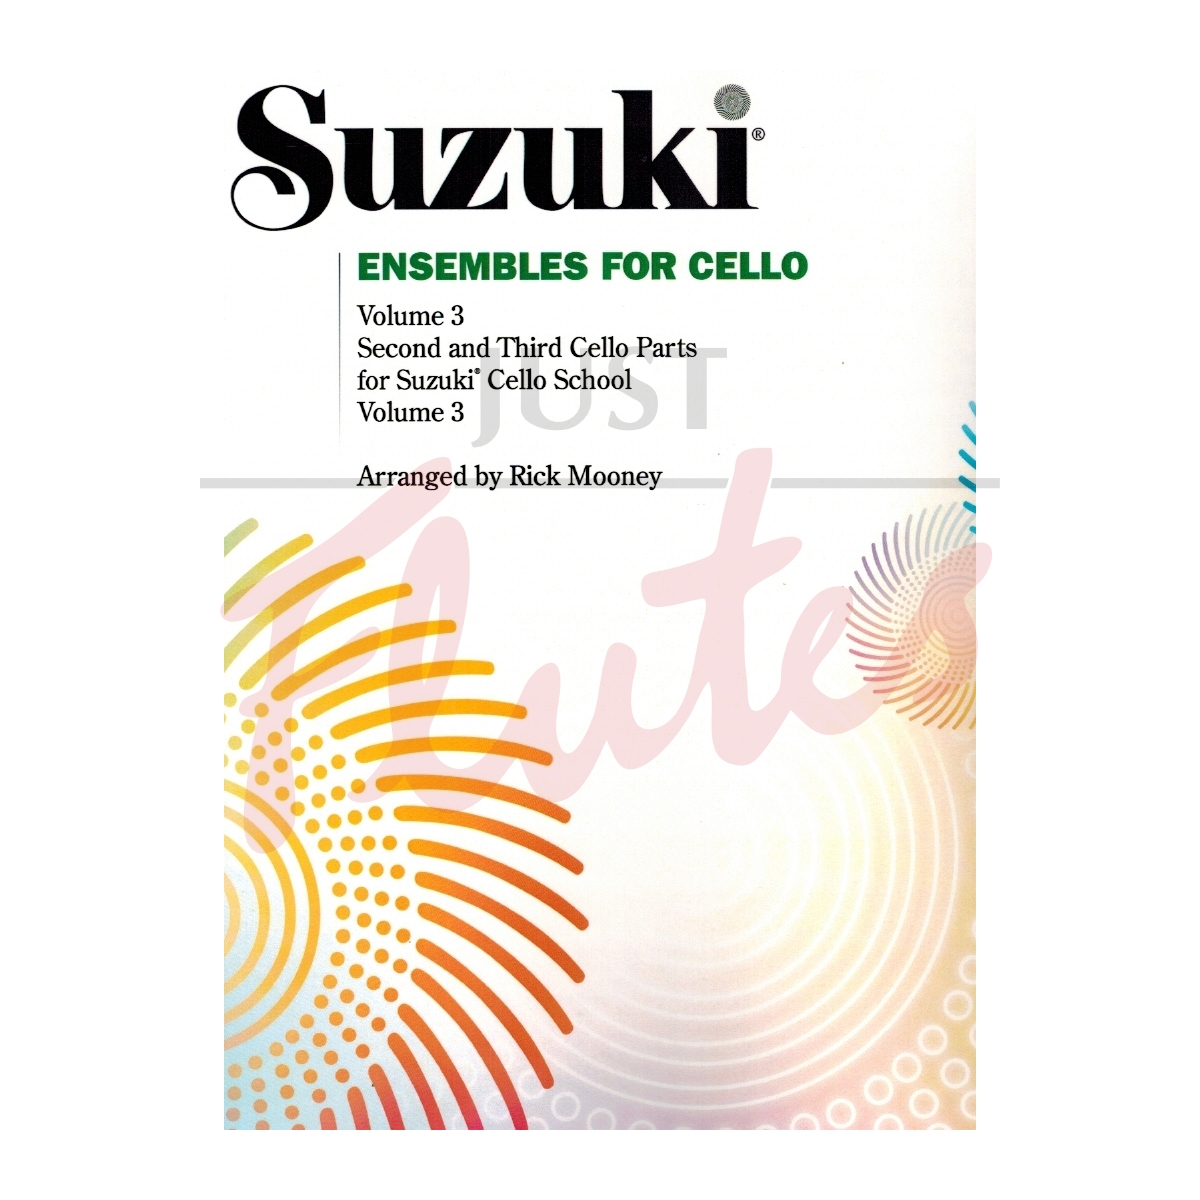 Suzuki Ensembles for Cello Vol 3